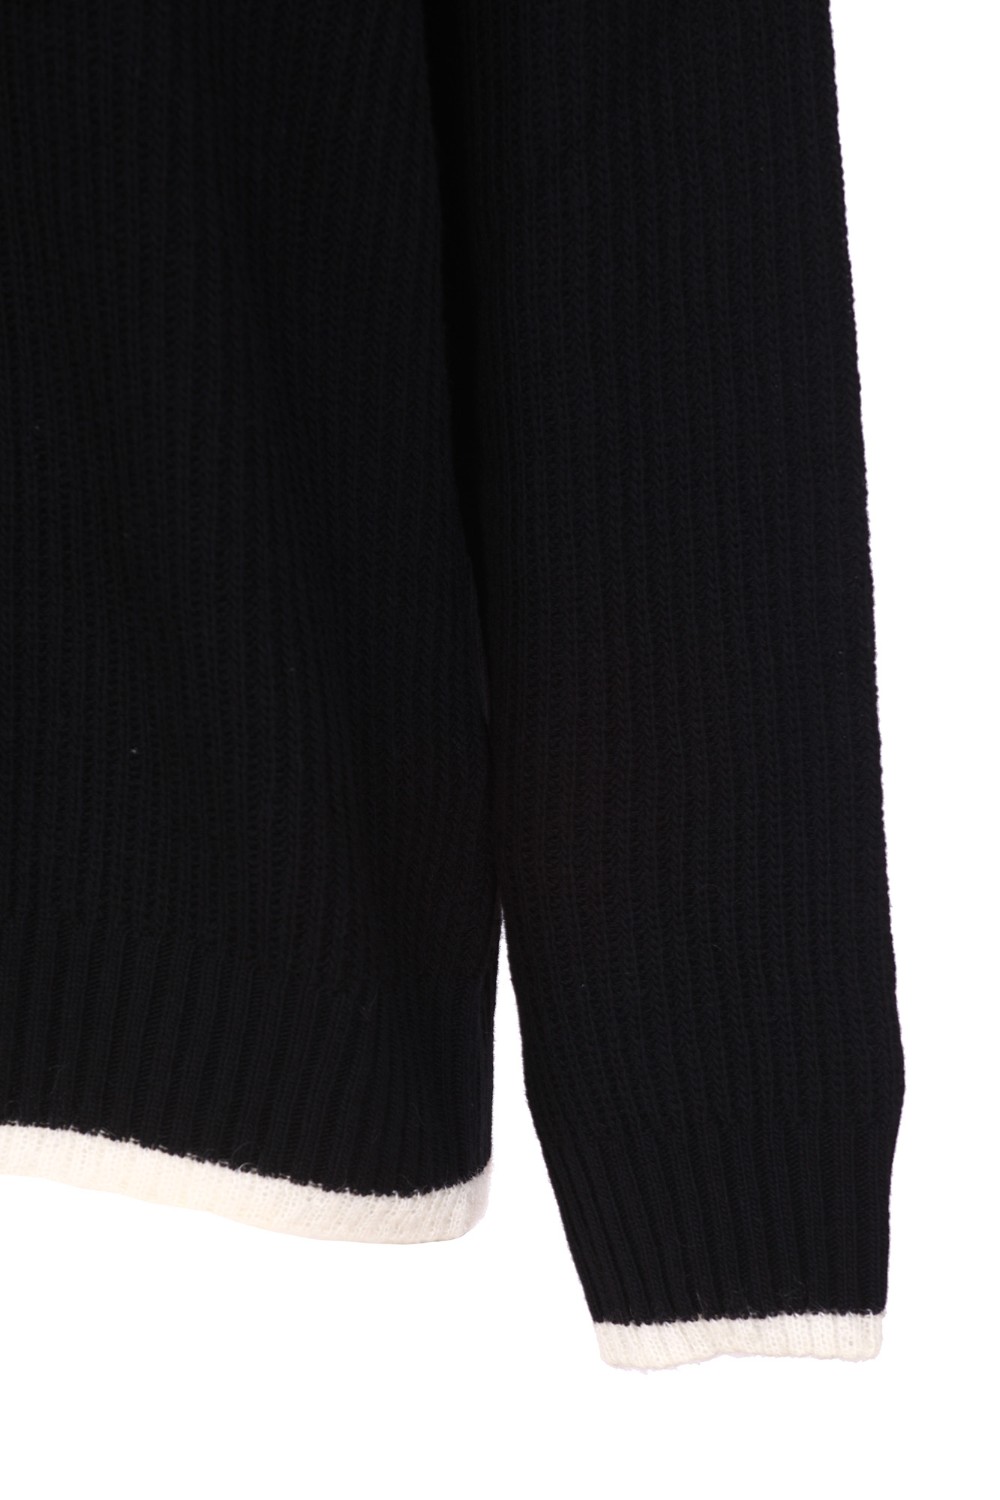 shop MONCLER Saldi Pull: Moncler maglia a collo alto in lana con logo.
Profilo in contrasto sul fondo della amglia.
Composizione: 100% lana vergine.
Fabbricato in Bulgaria.. 9F00005 M1115-999 number 214488